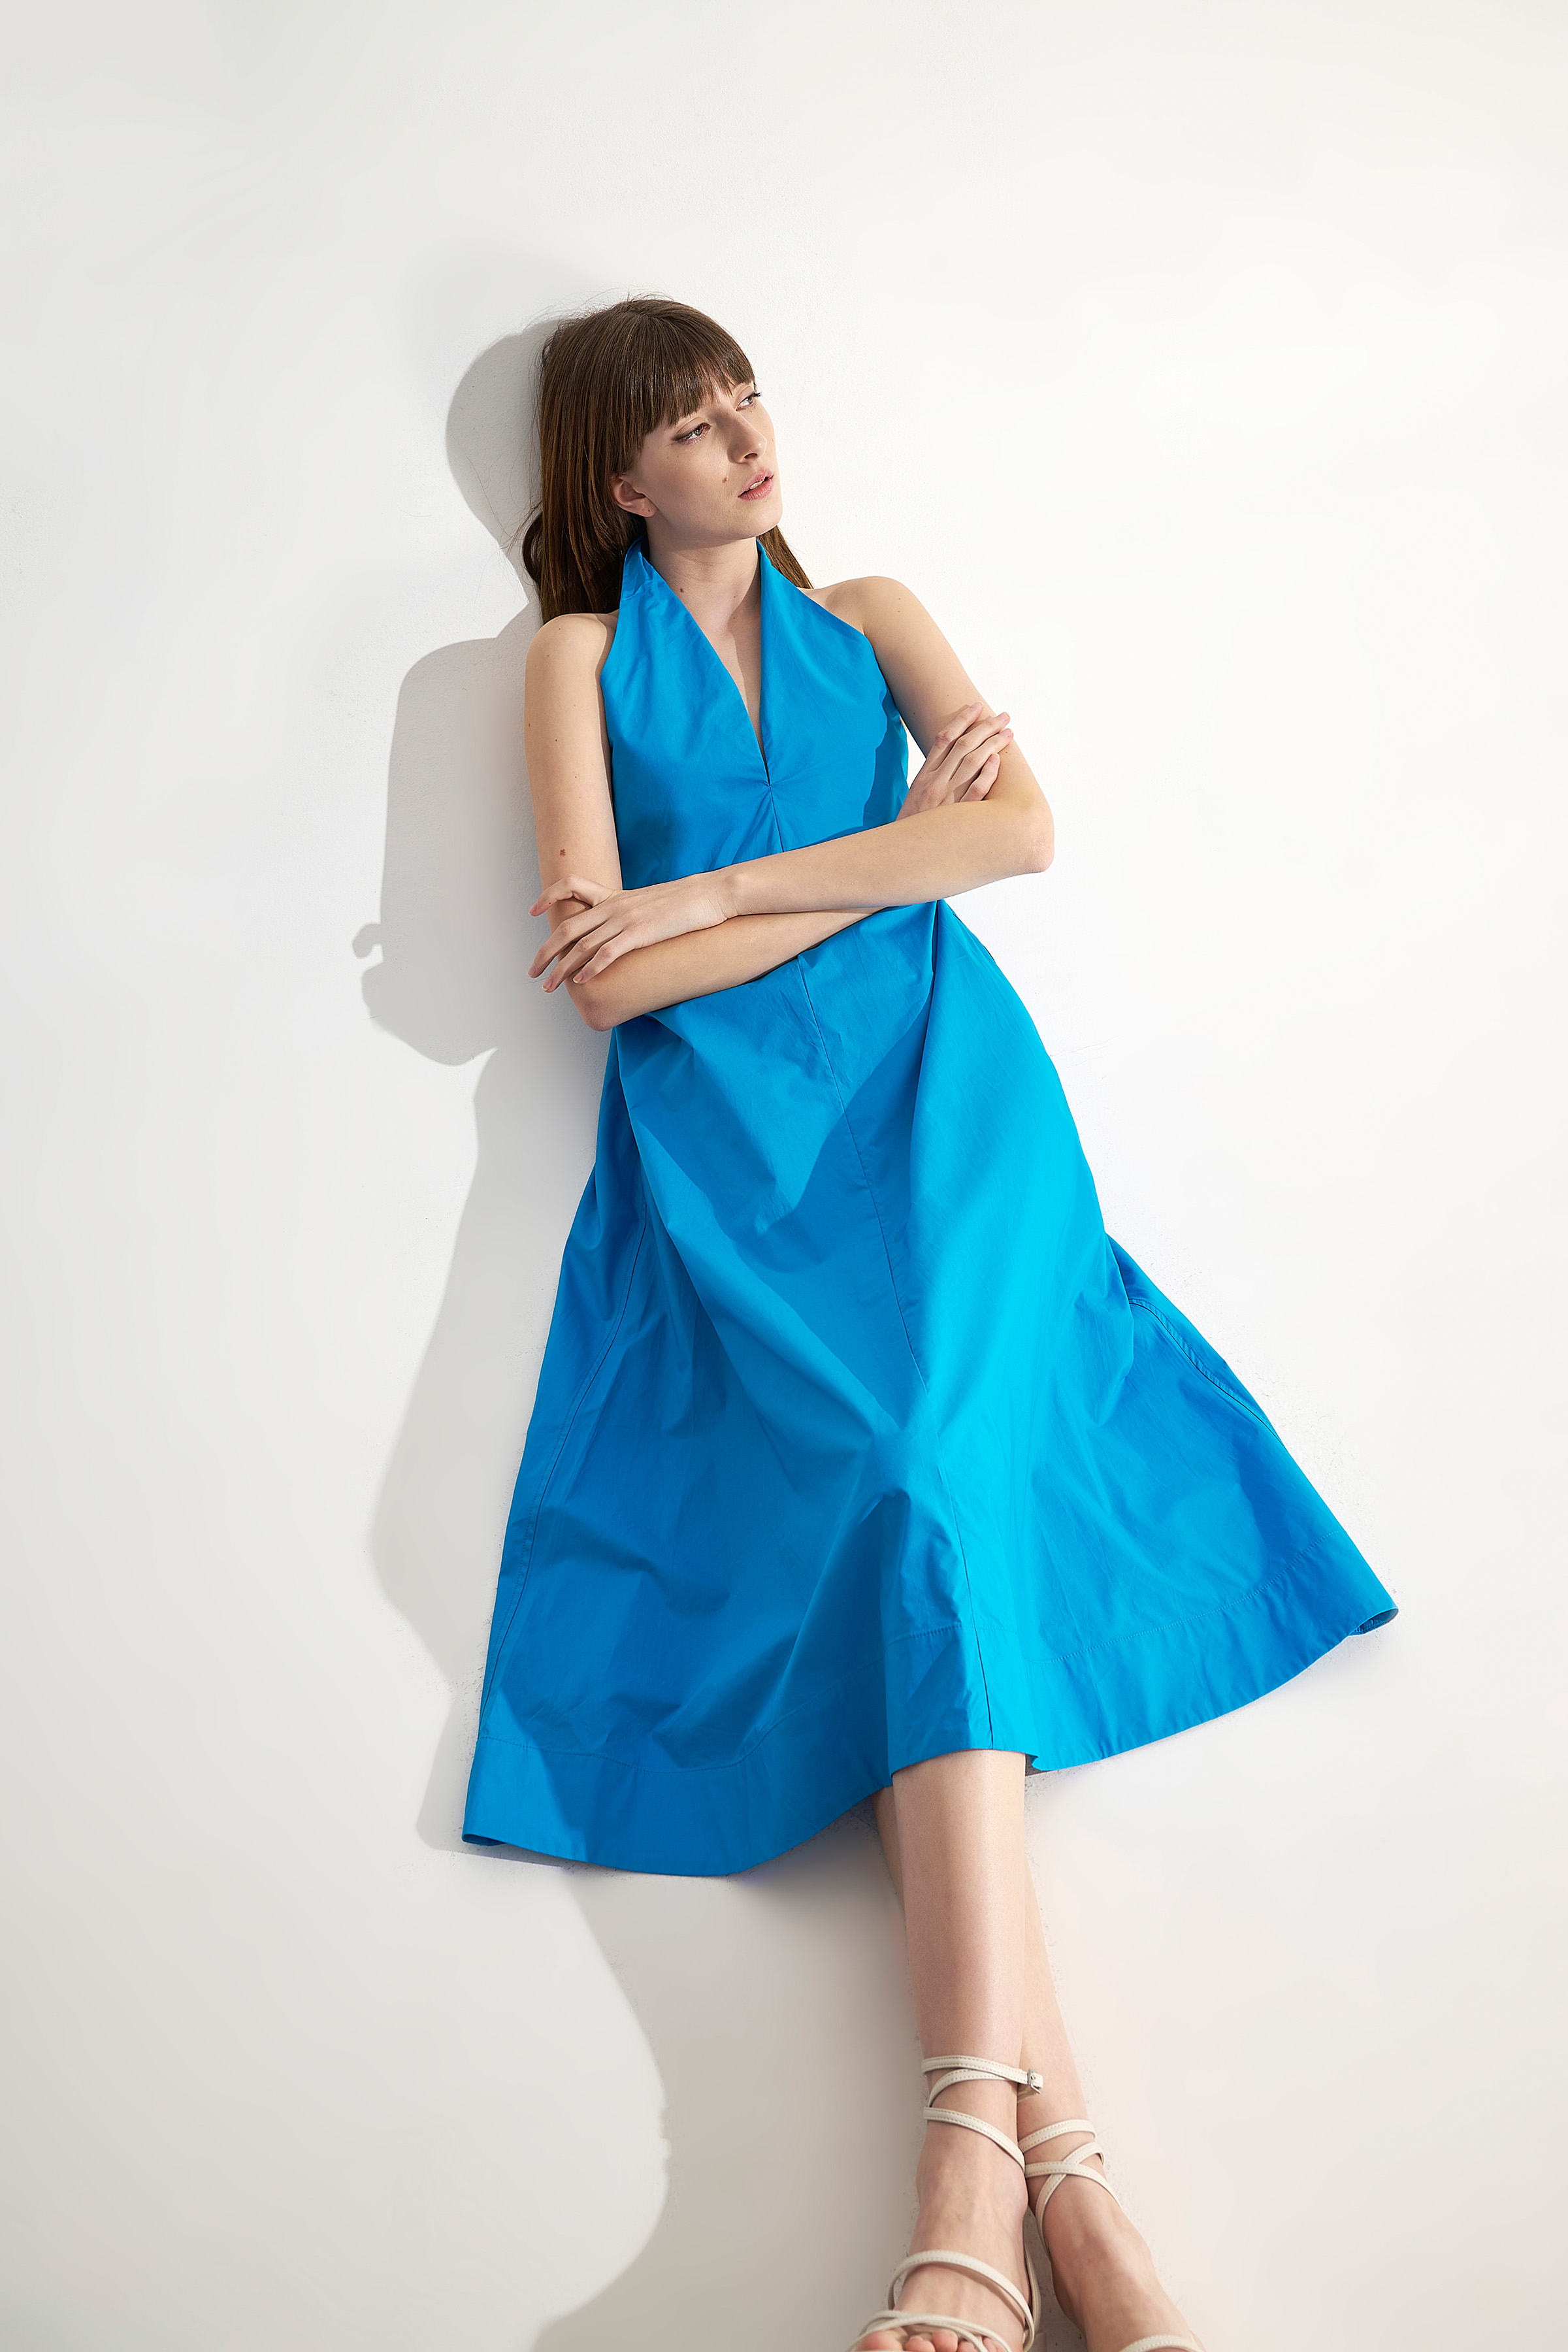 Φόρεμα μακρύ με δέσιμο στον λαιμό Turquoise Ale Website > ALE > OUTLET > Φορέματα